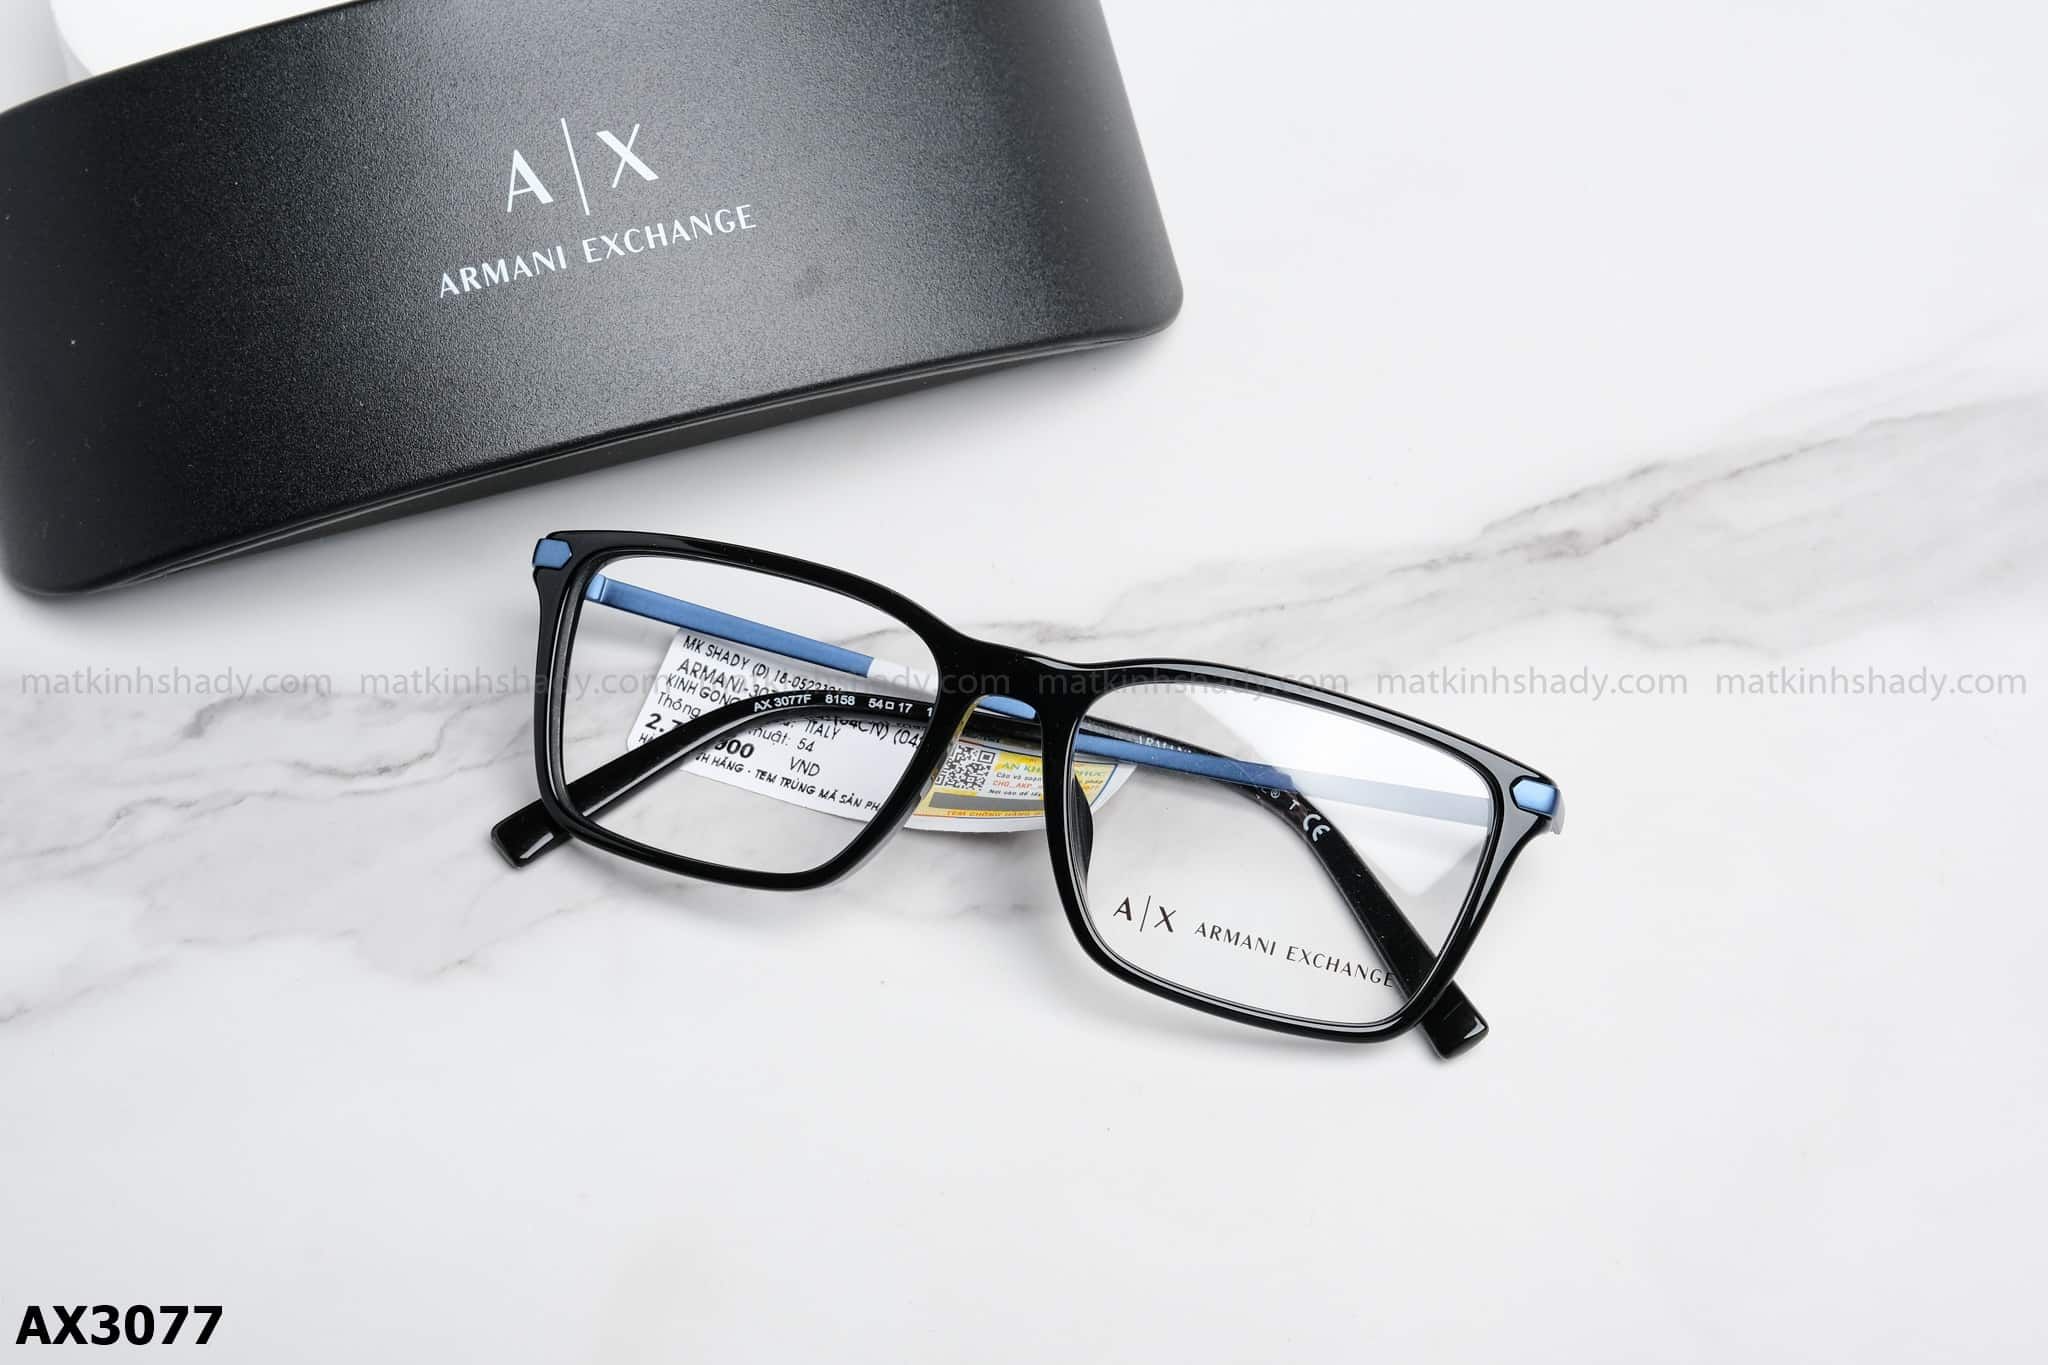  Armani Exchange Eyewear - Glasses - AX3077 